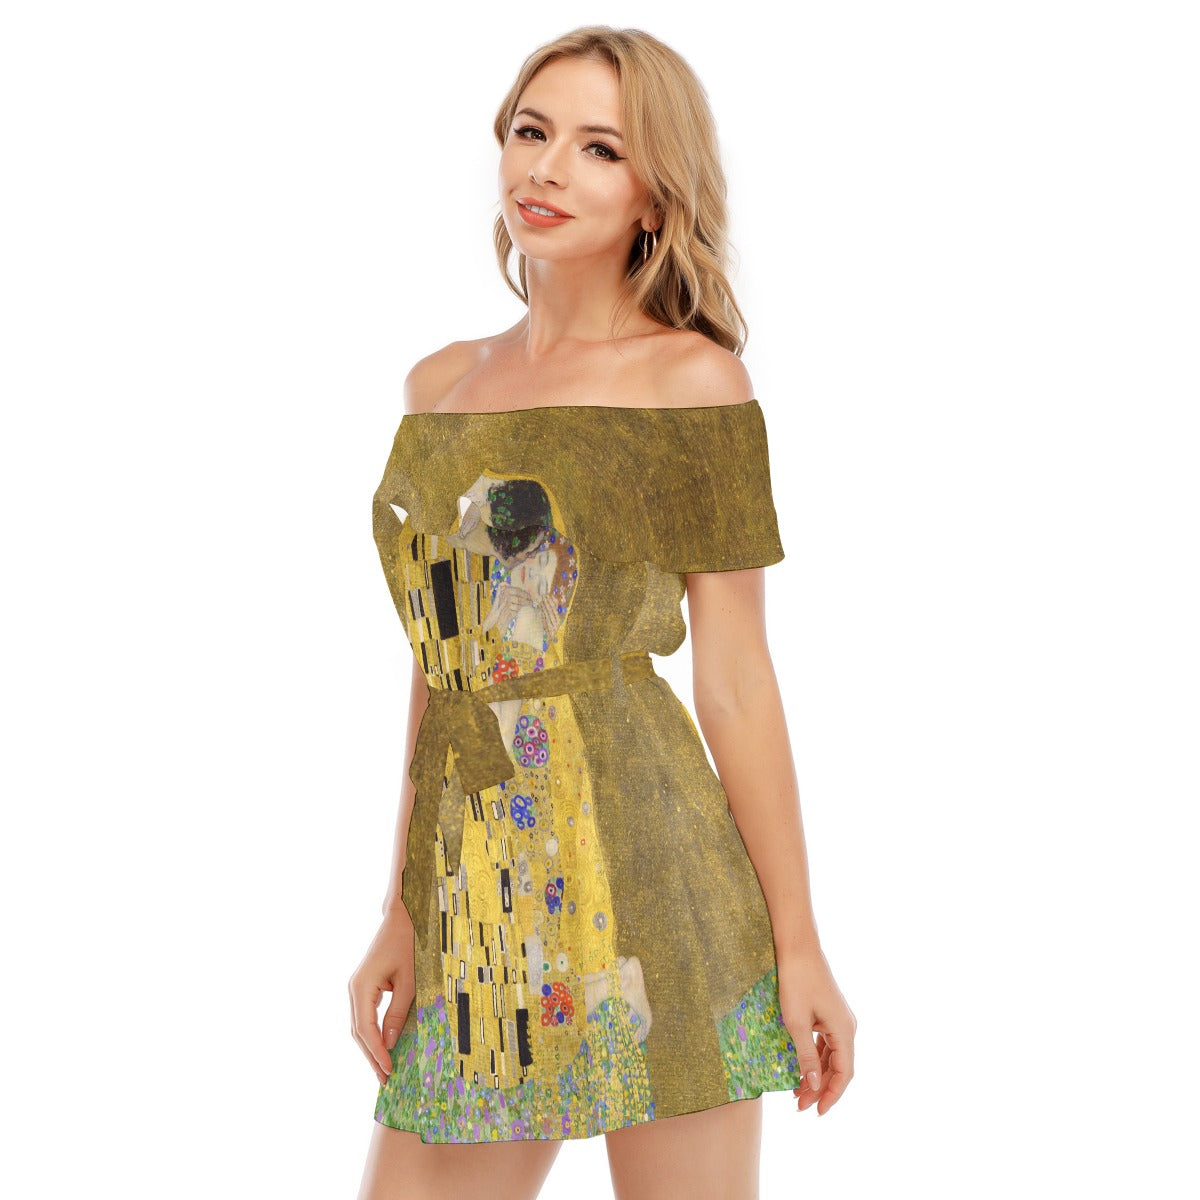 Enchanting Embrace Off-shoulder Dress featuring Gustav Klimt's "The Kiss"